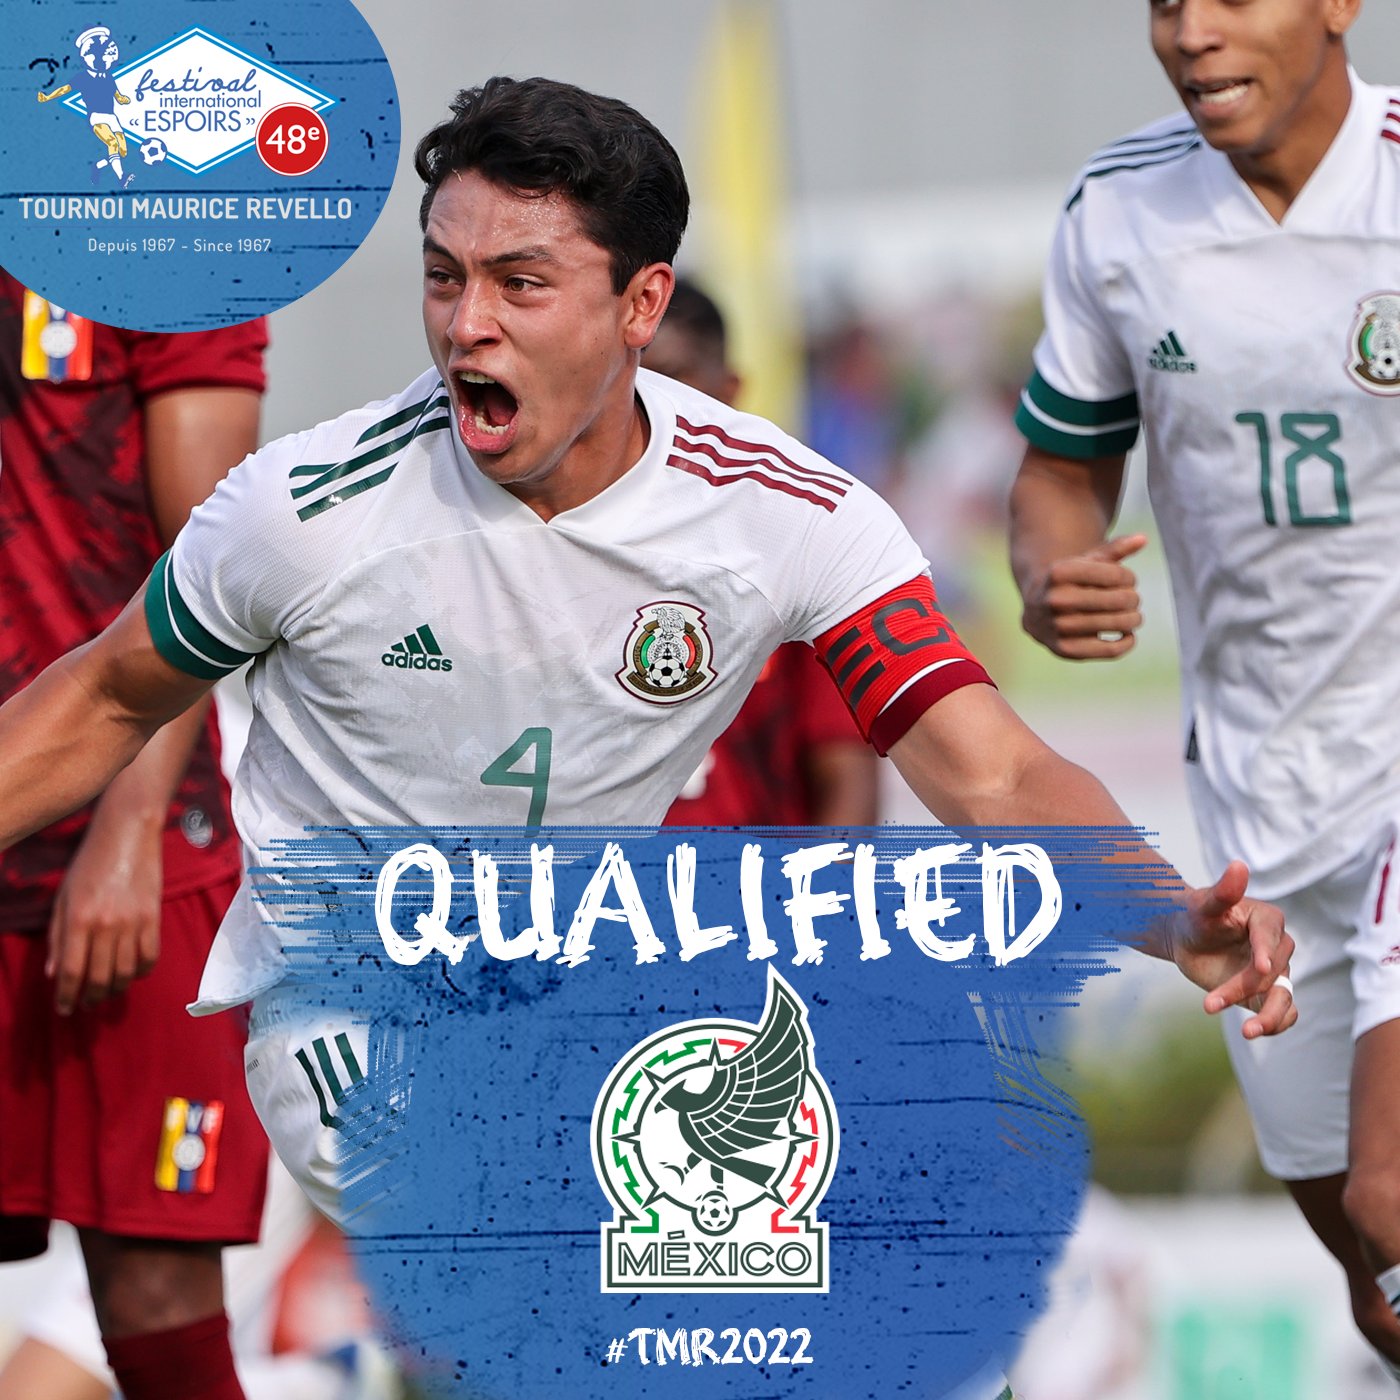 Le Mexique s'est qualifié pour les demi-finales du tournoi Maurice Revello 2022. Photo : @TournoiMRevello